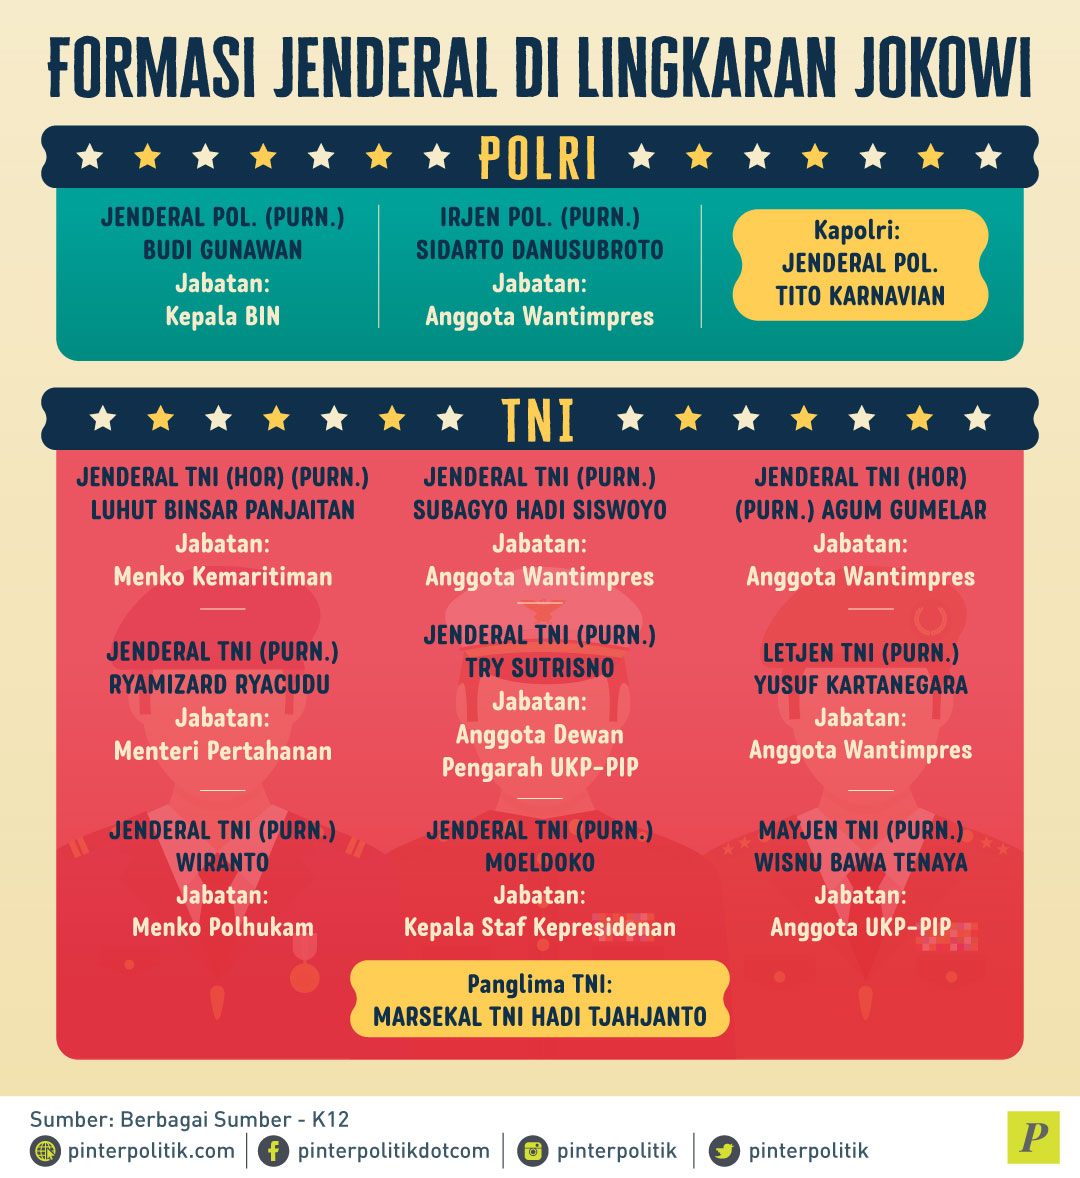 Koleksi Jenderal Jokowi: TNI vs Polri?